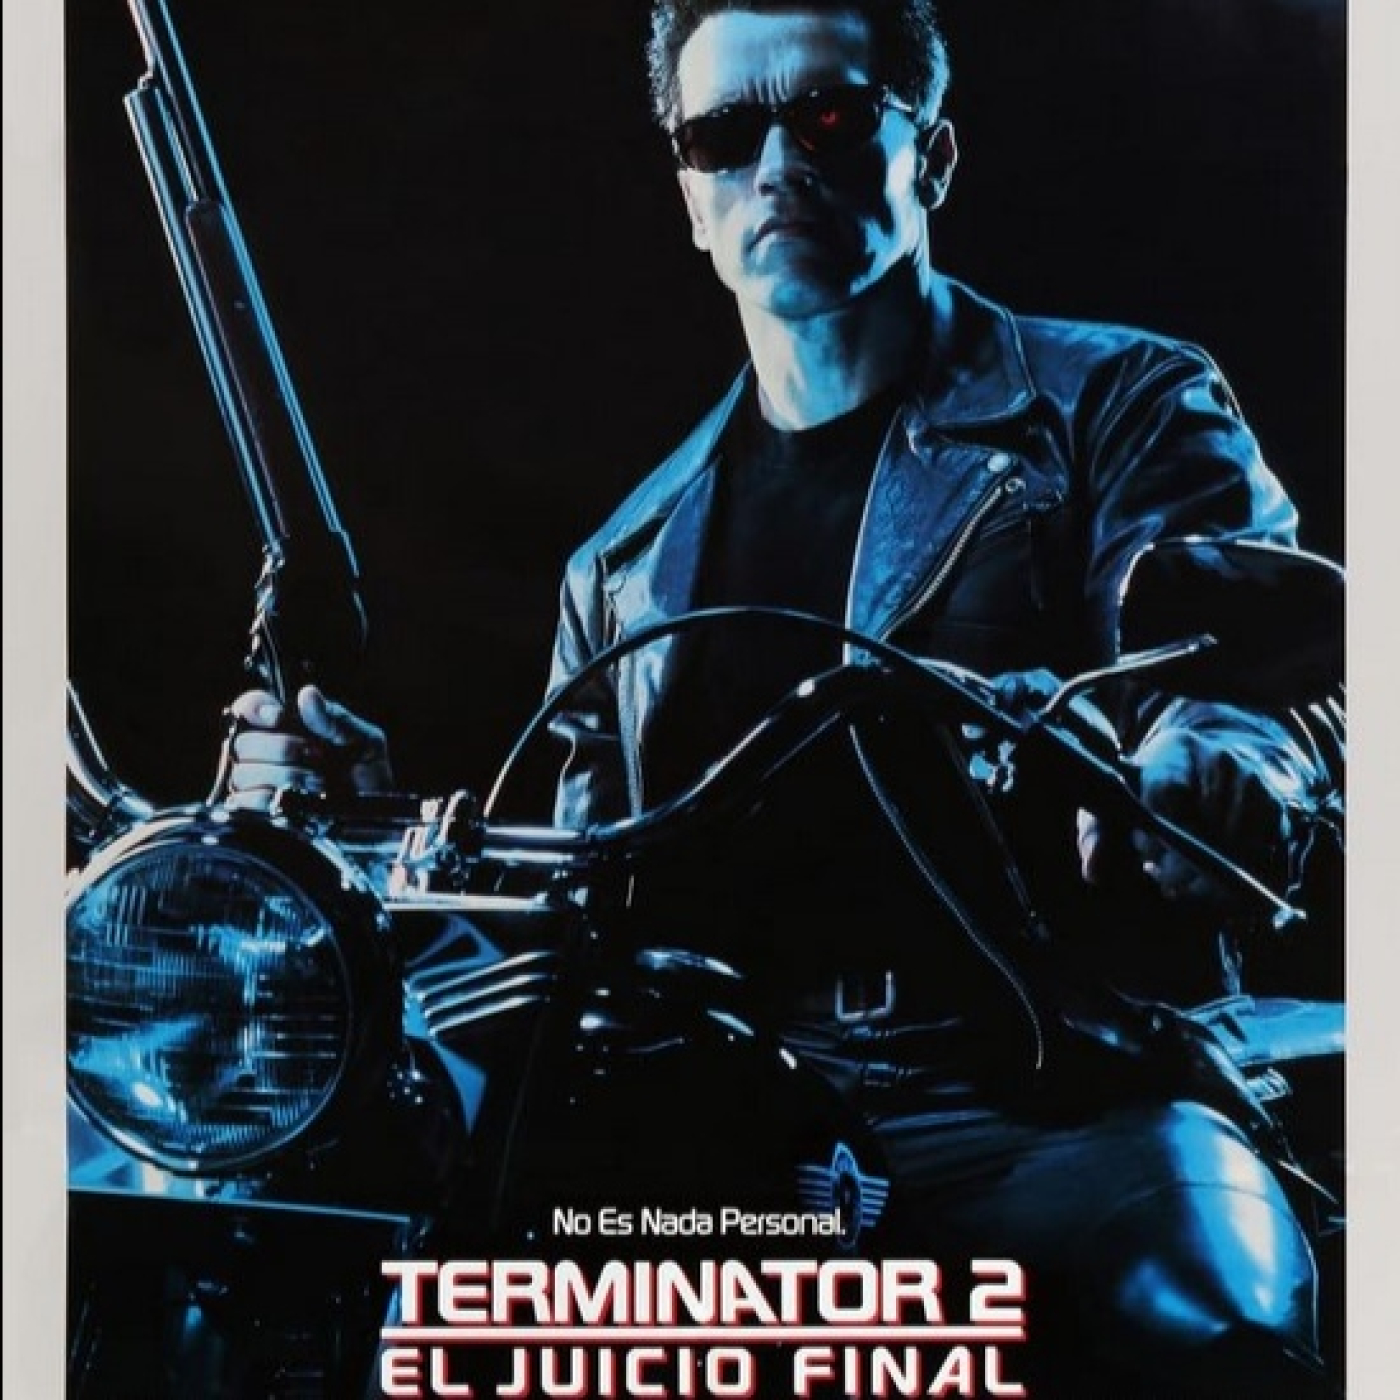 3x50-Terminator 2: El juicio final - 1991